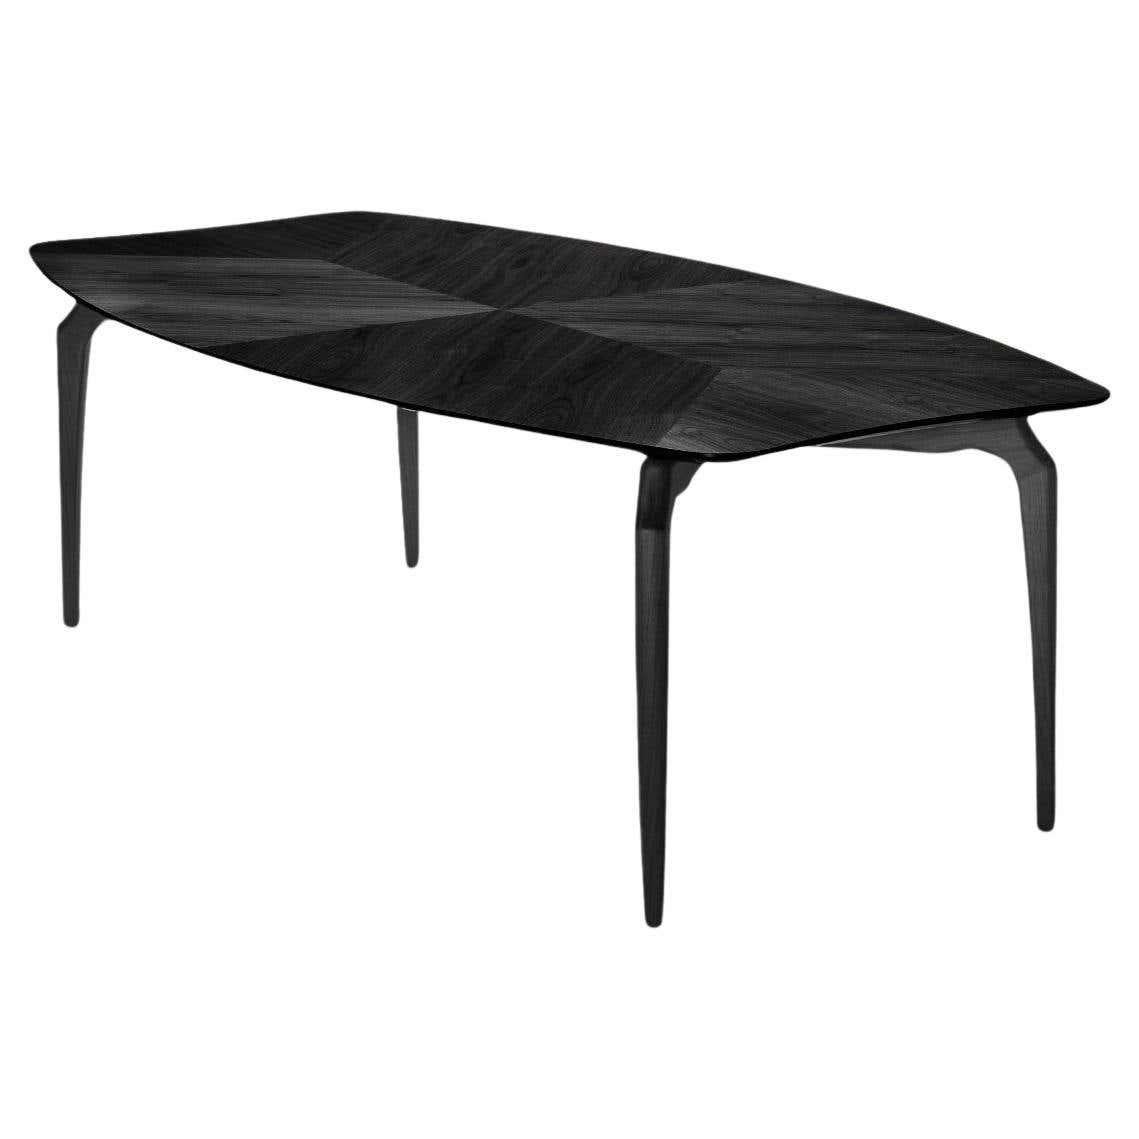 Table Gaulino conçue par Oscar Tusquets et fabriquée par BD Barcelona Design, circa 2010.

Bois teinté noir.

Oscar Tusquets, architecte, artiste et écrivain, a presque tout conçu au cours de sa longue carrière. En particulier, de nombreuses